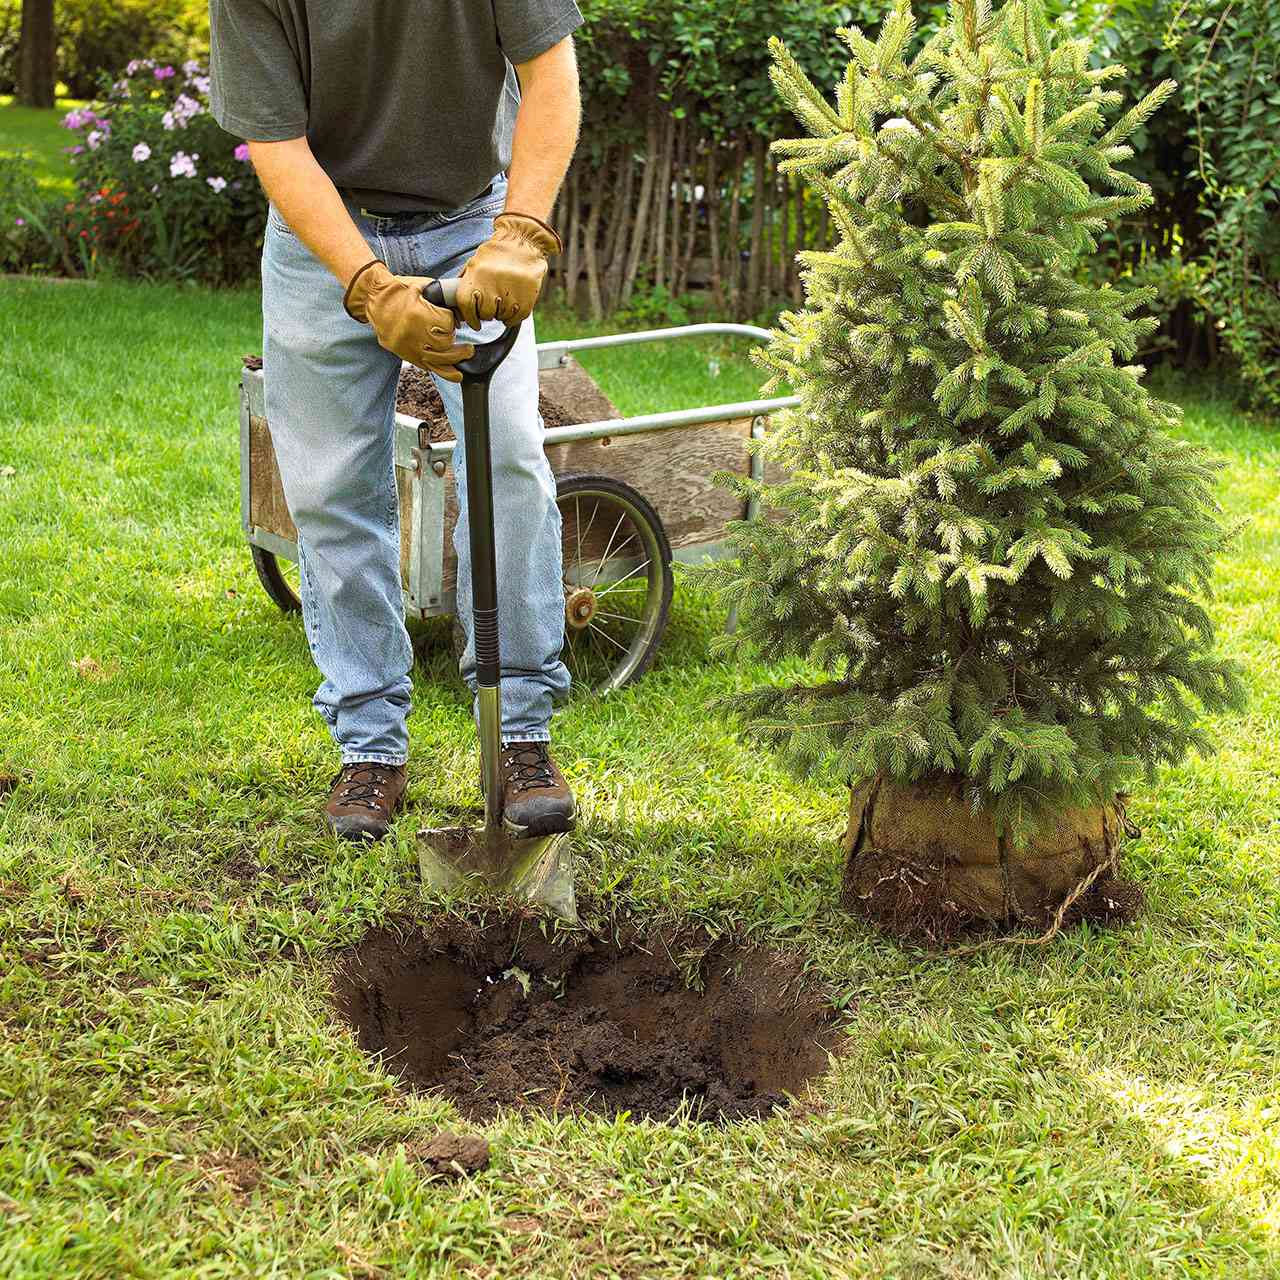 Planting a tree or shrub